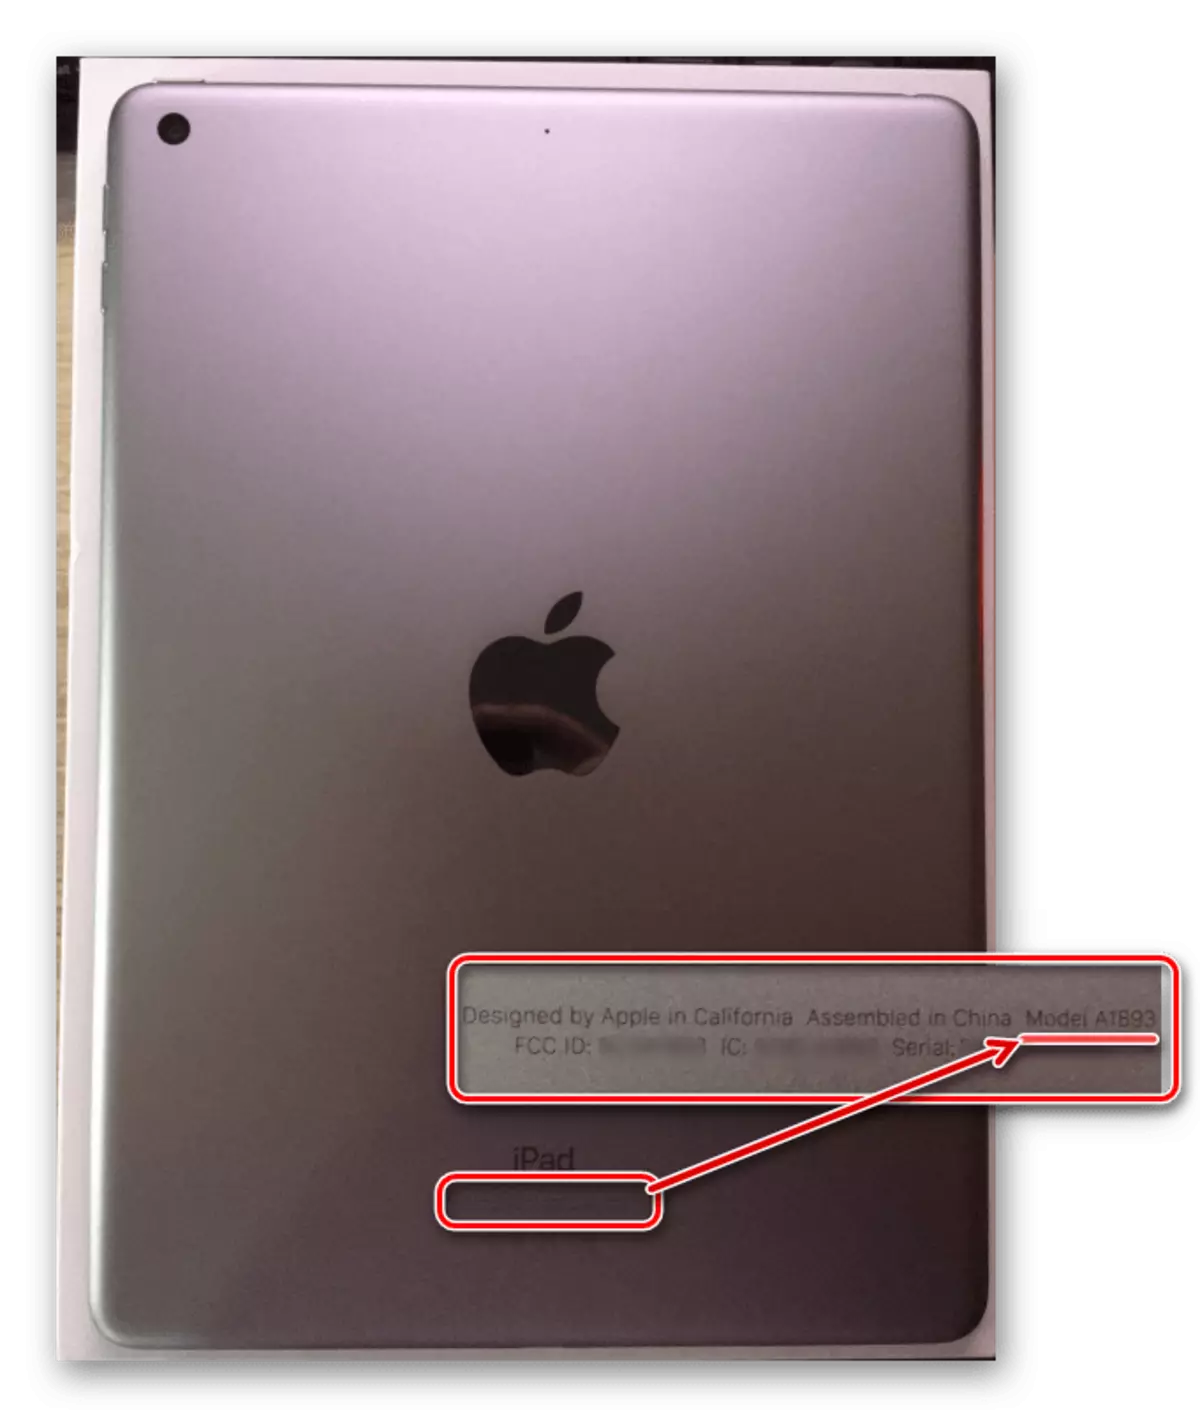 Veure el nombre de model de l'iPad a la part posterior de la caixa